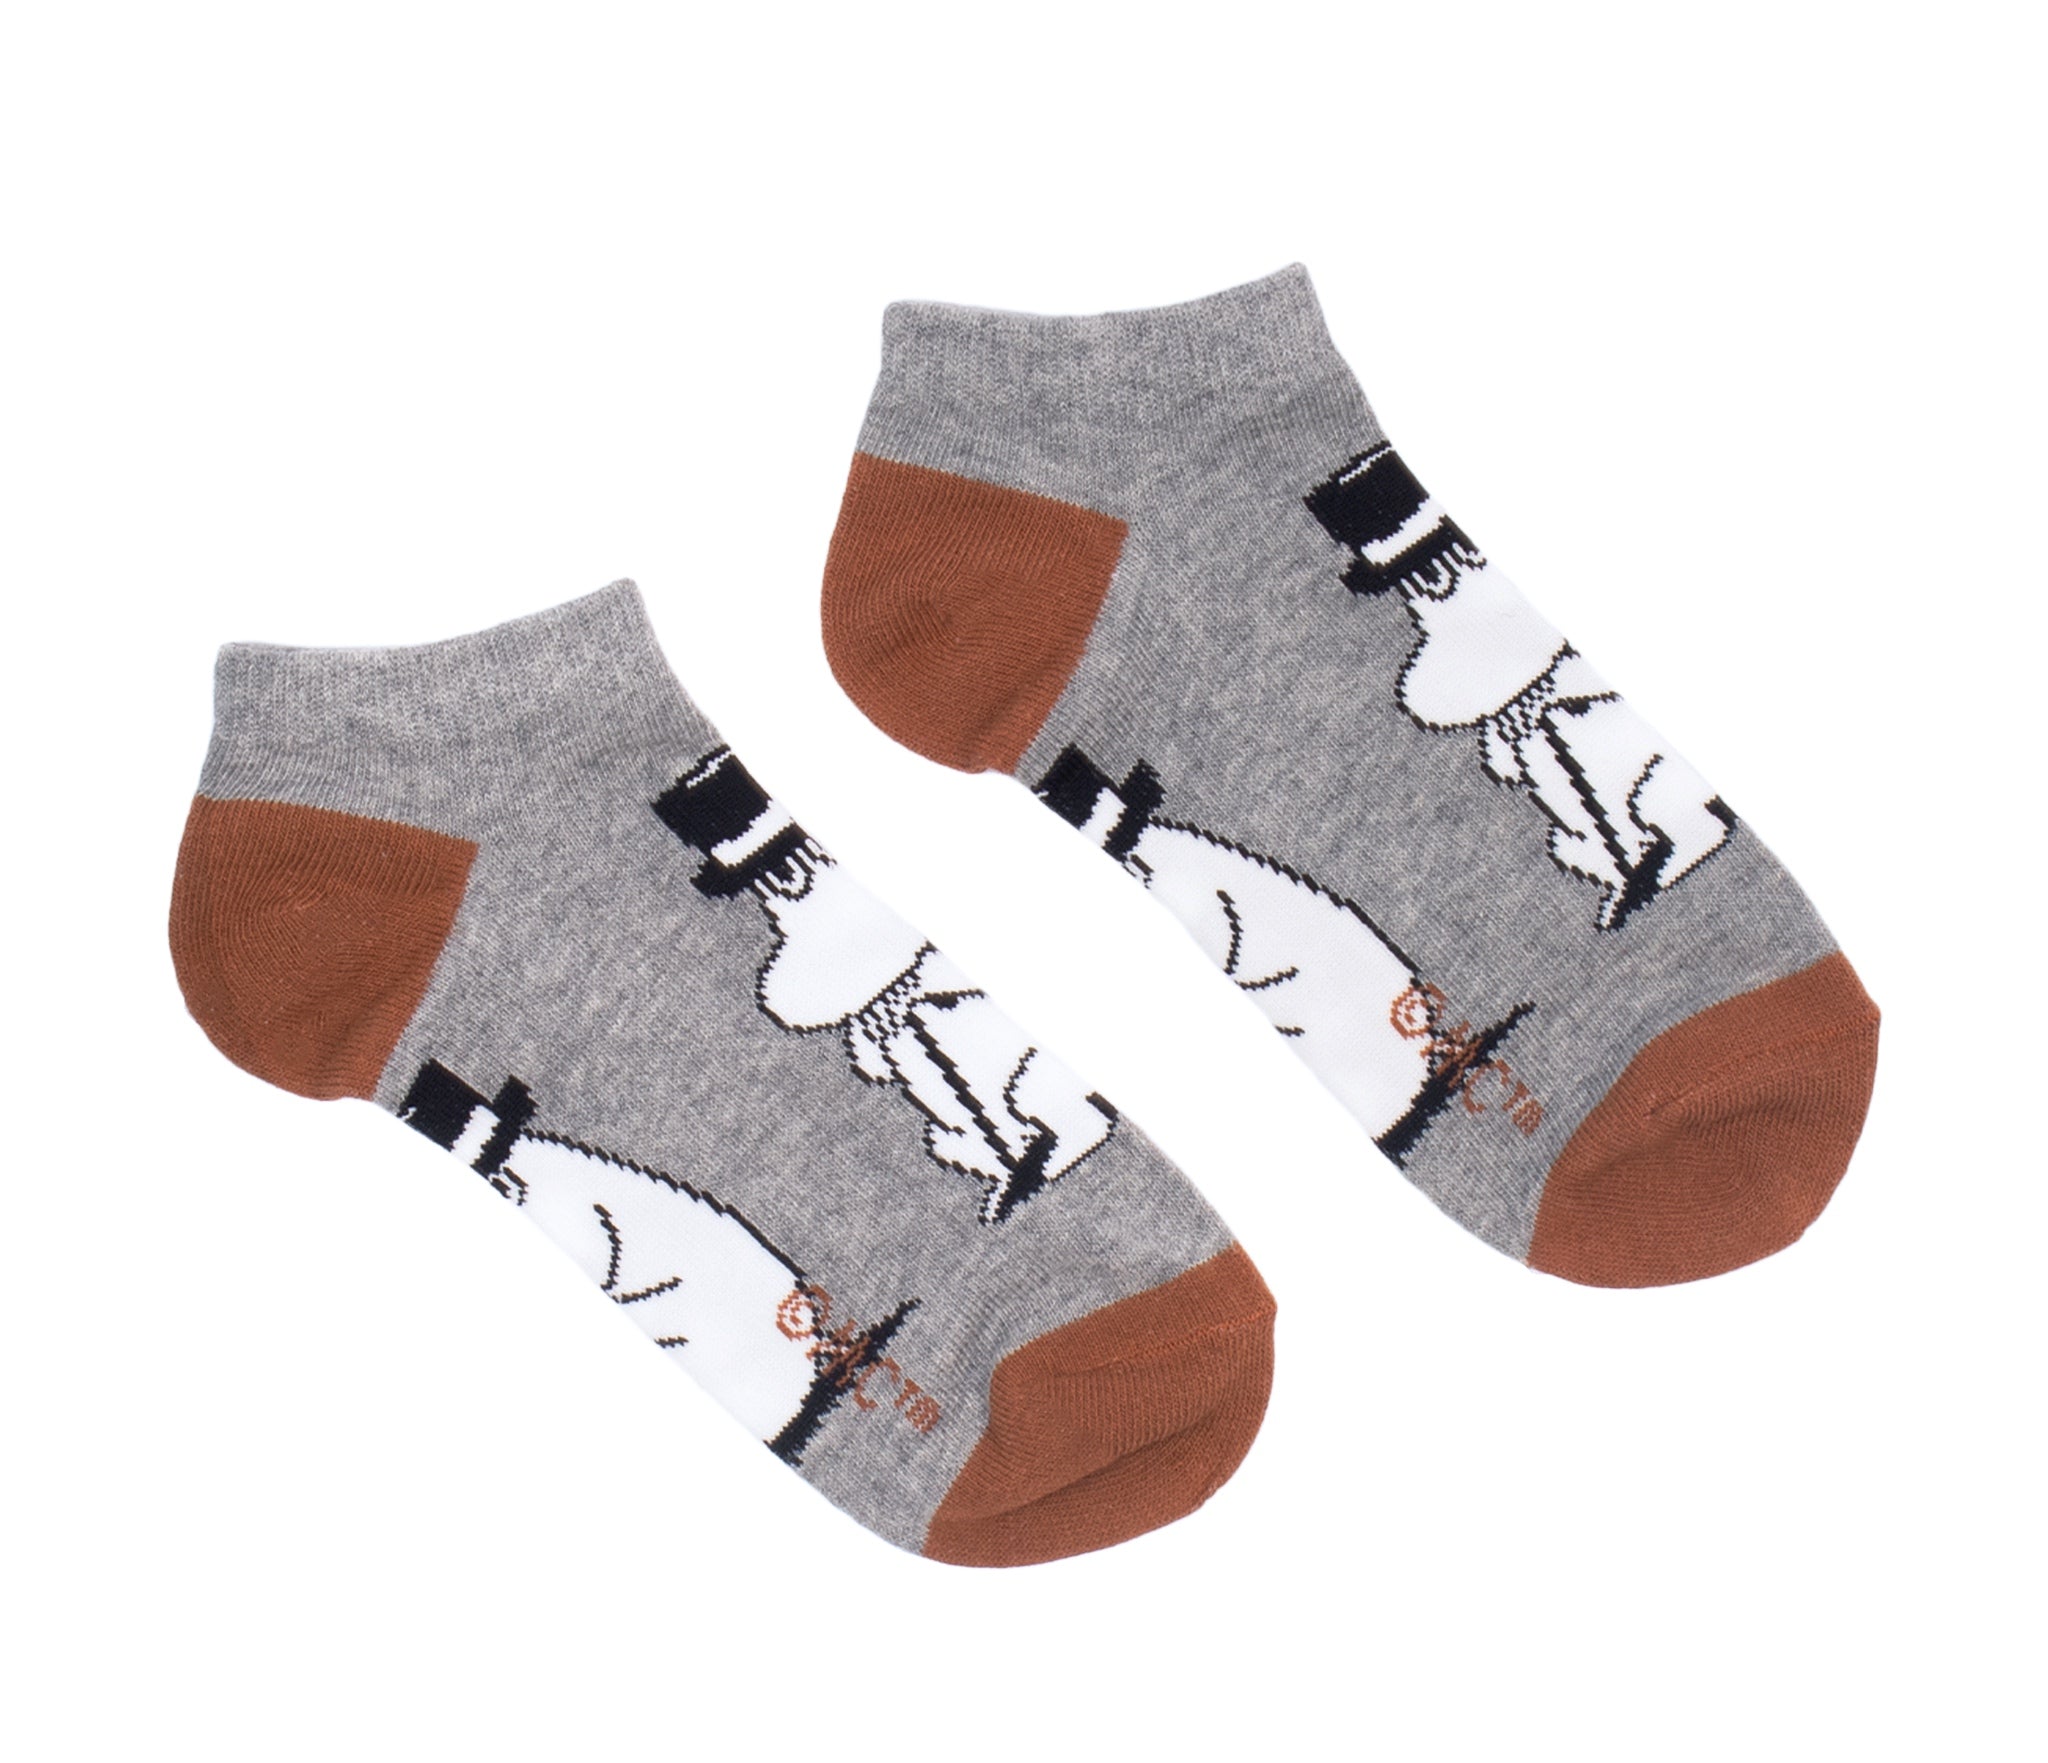 Moominpappa Wondering Men Ankle Socks - Grey